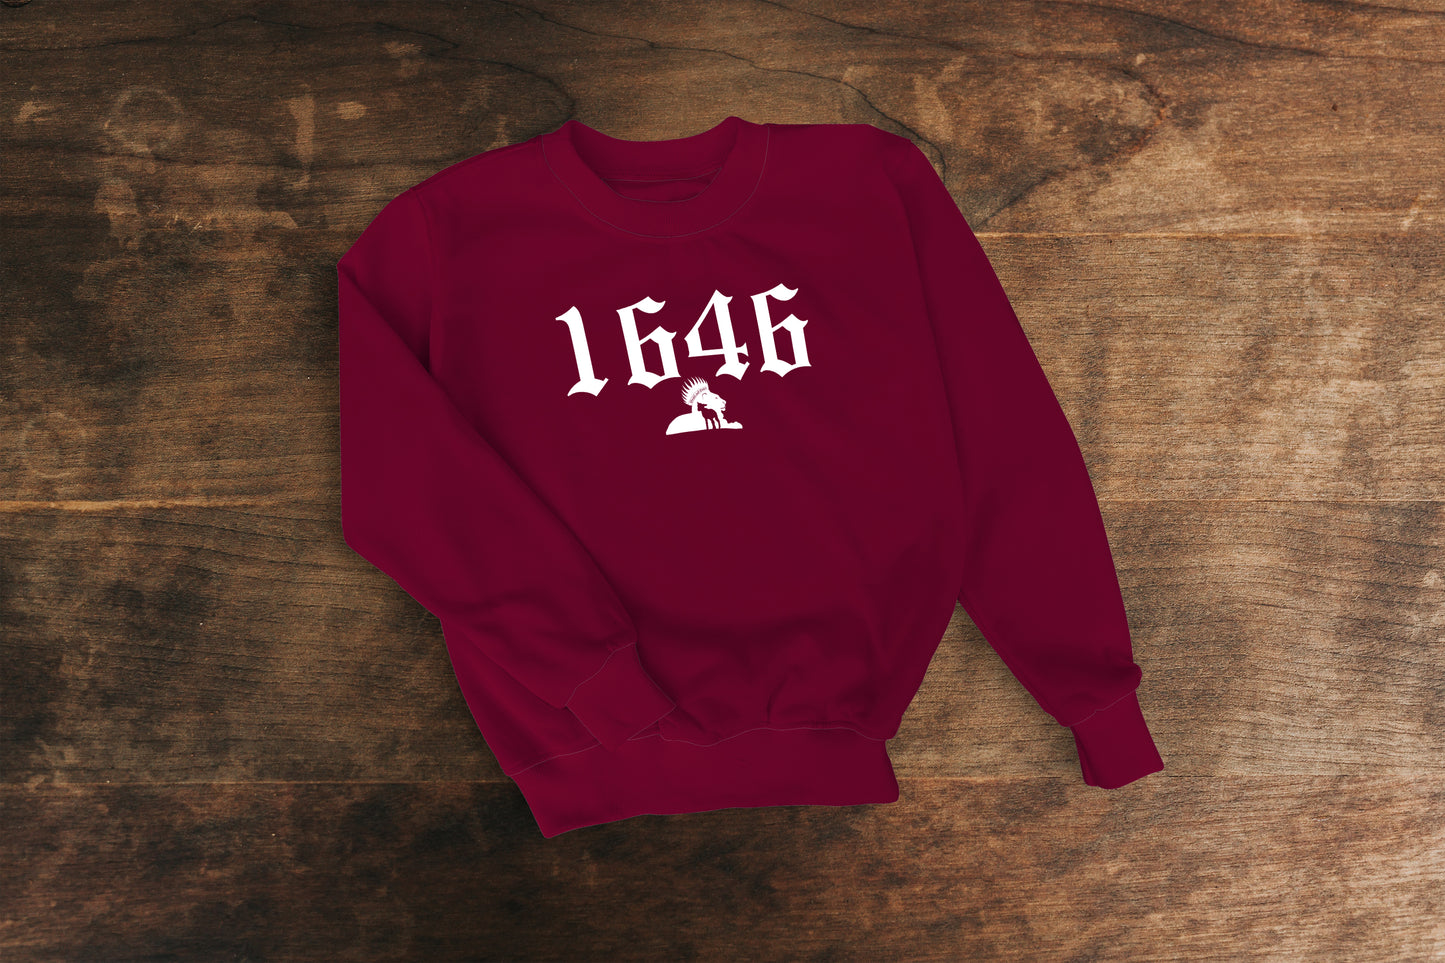 1646 - Sweatshirt